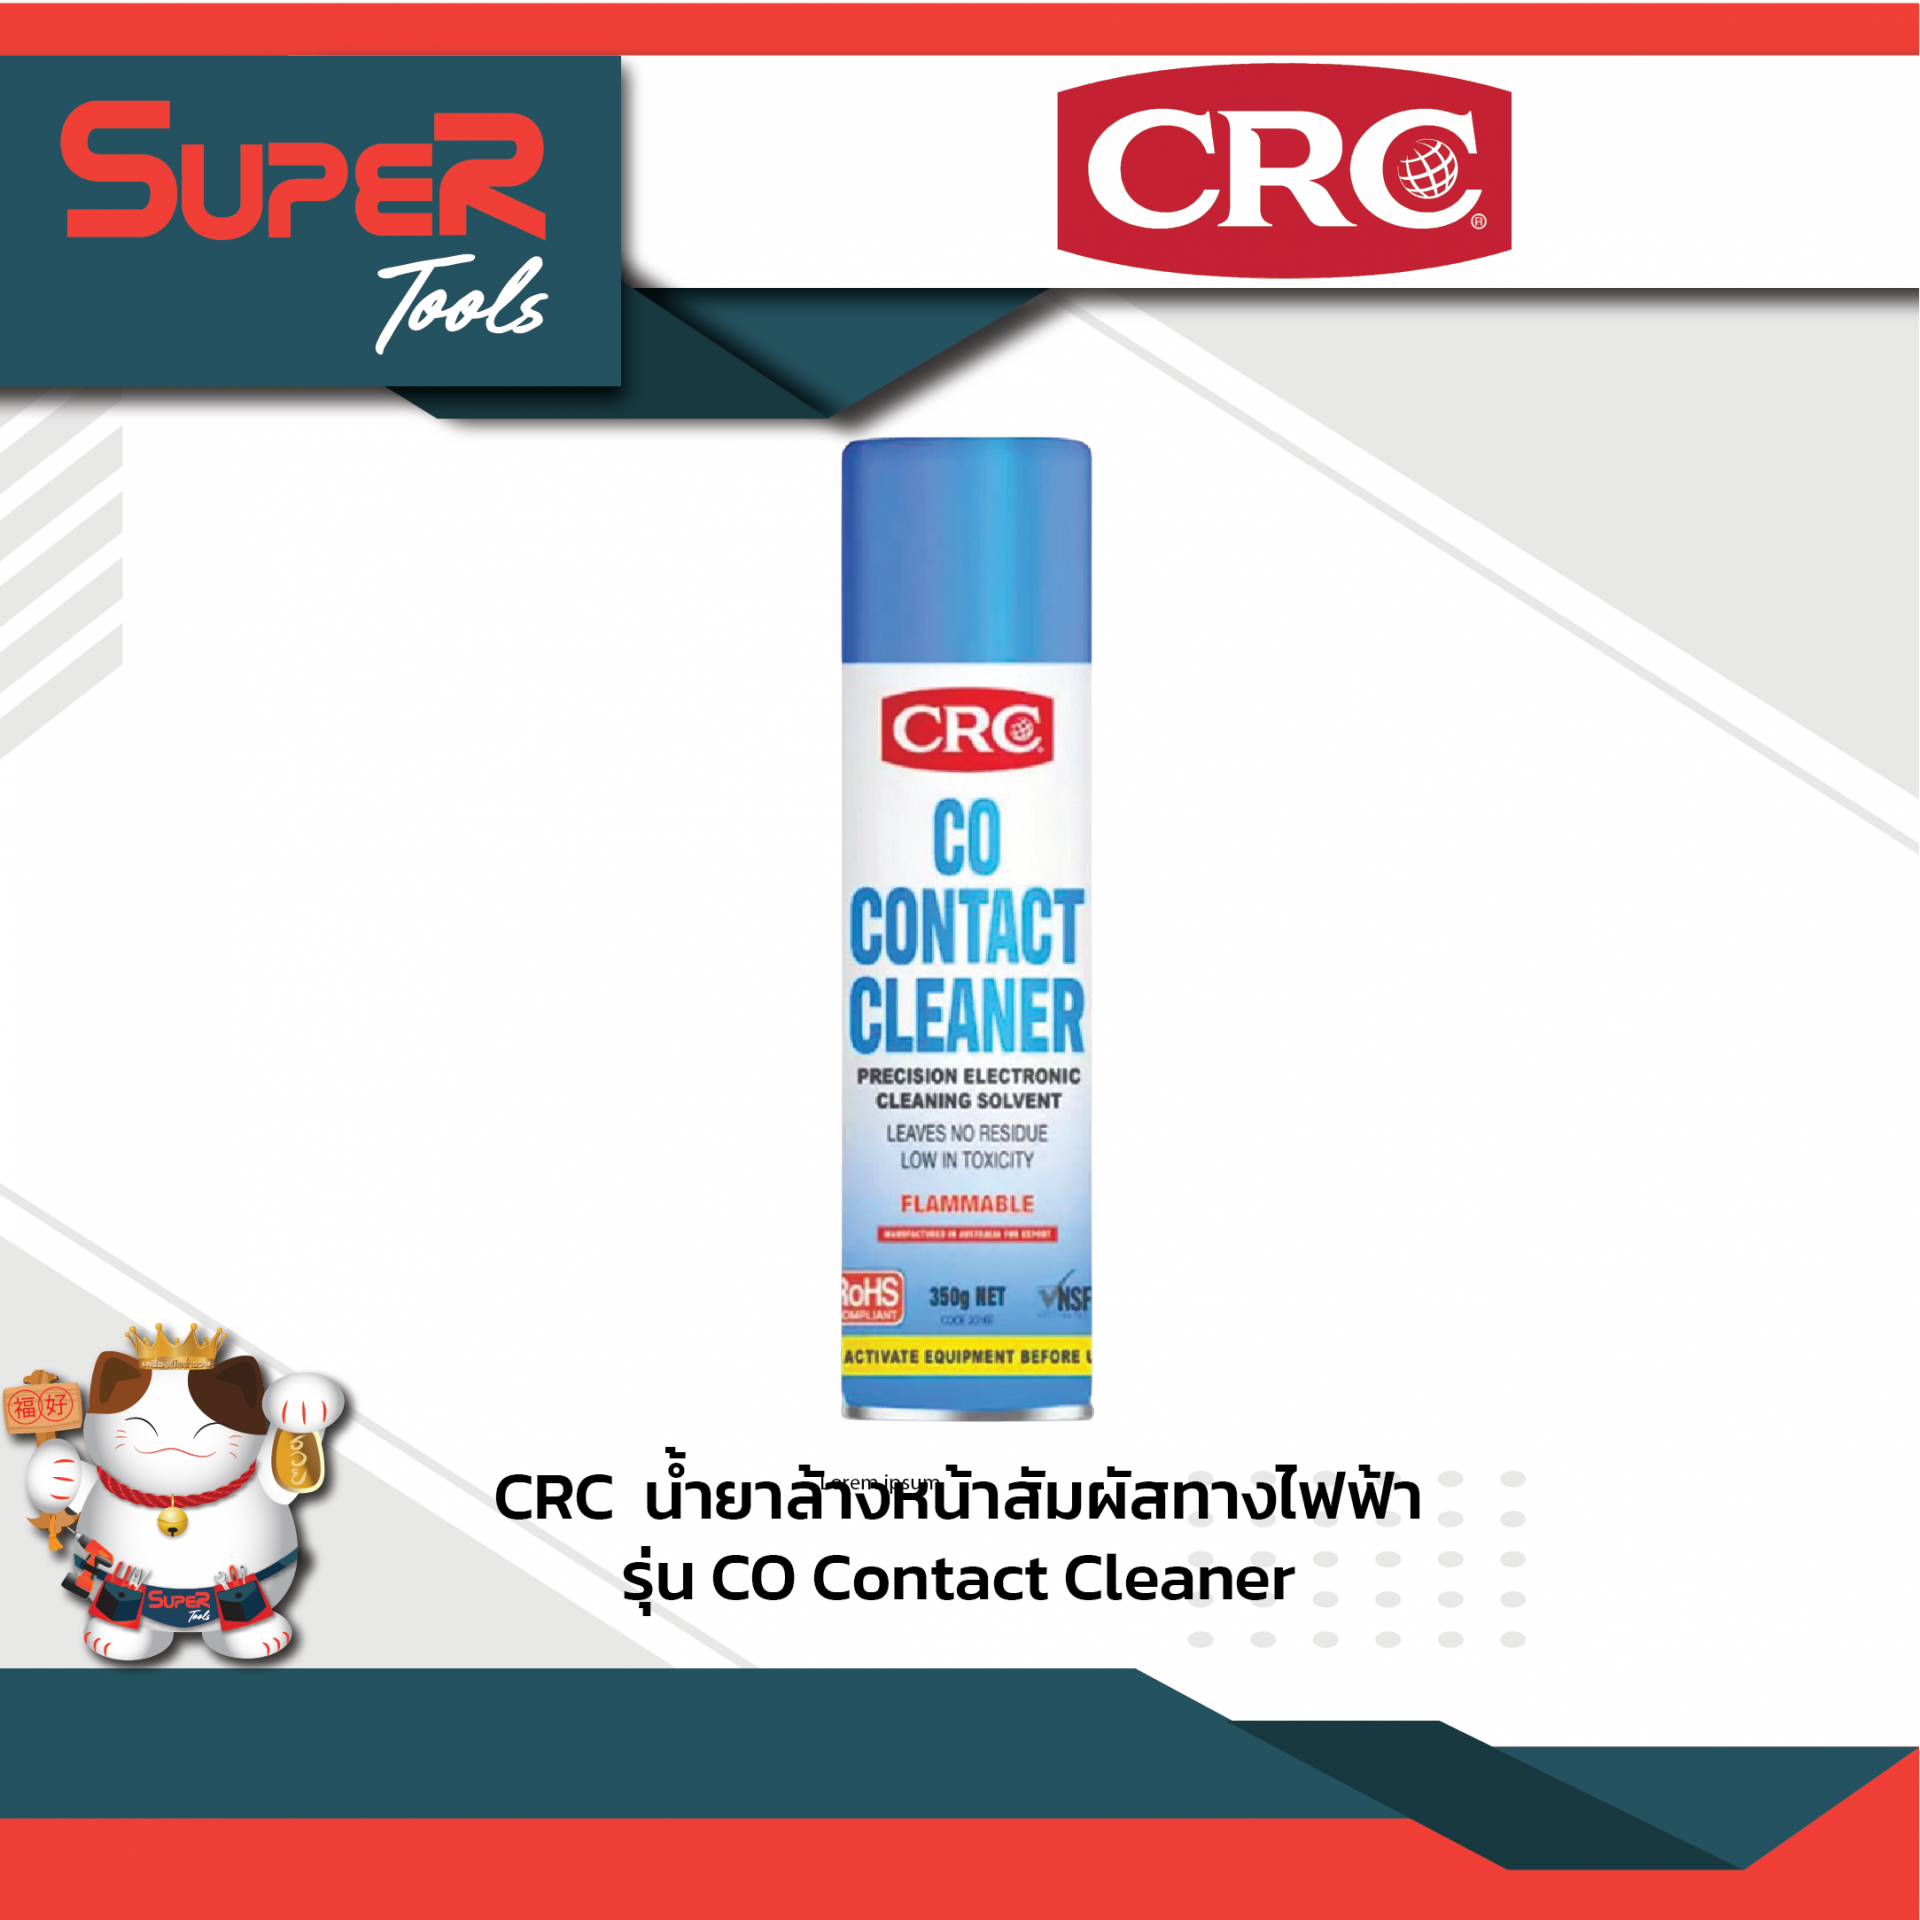 CRC นํ้ายาทำความสะอาดหน้าสัมผัสทางไฟฟ้า รุ่น CO Contact Cleaner